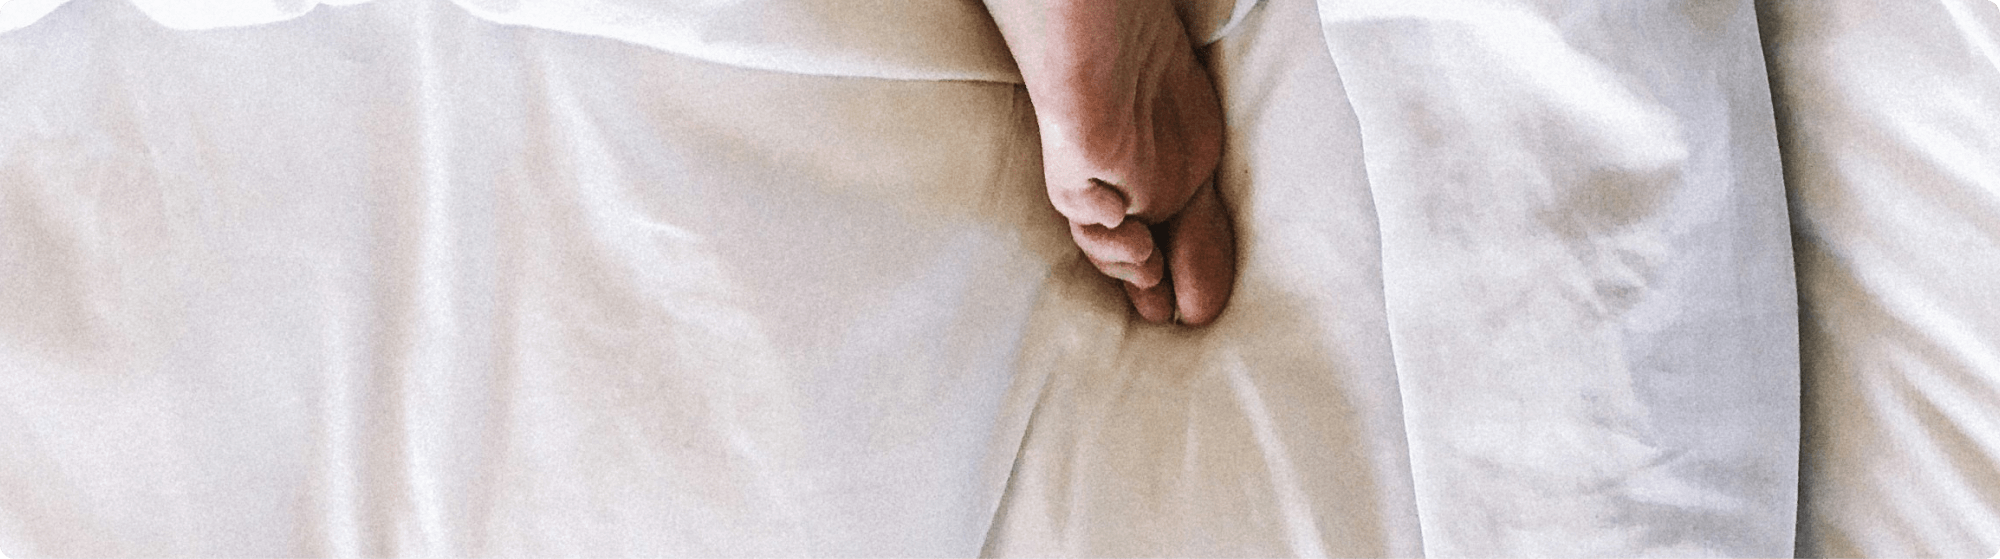 Fuß einer schlafenden Person im Bett